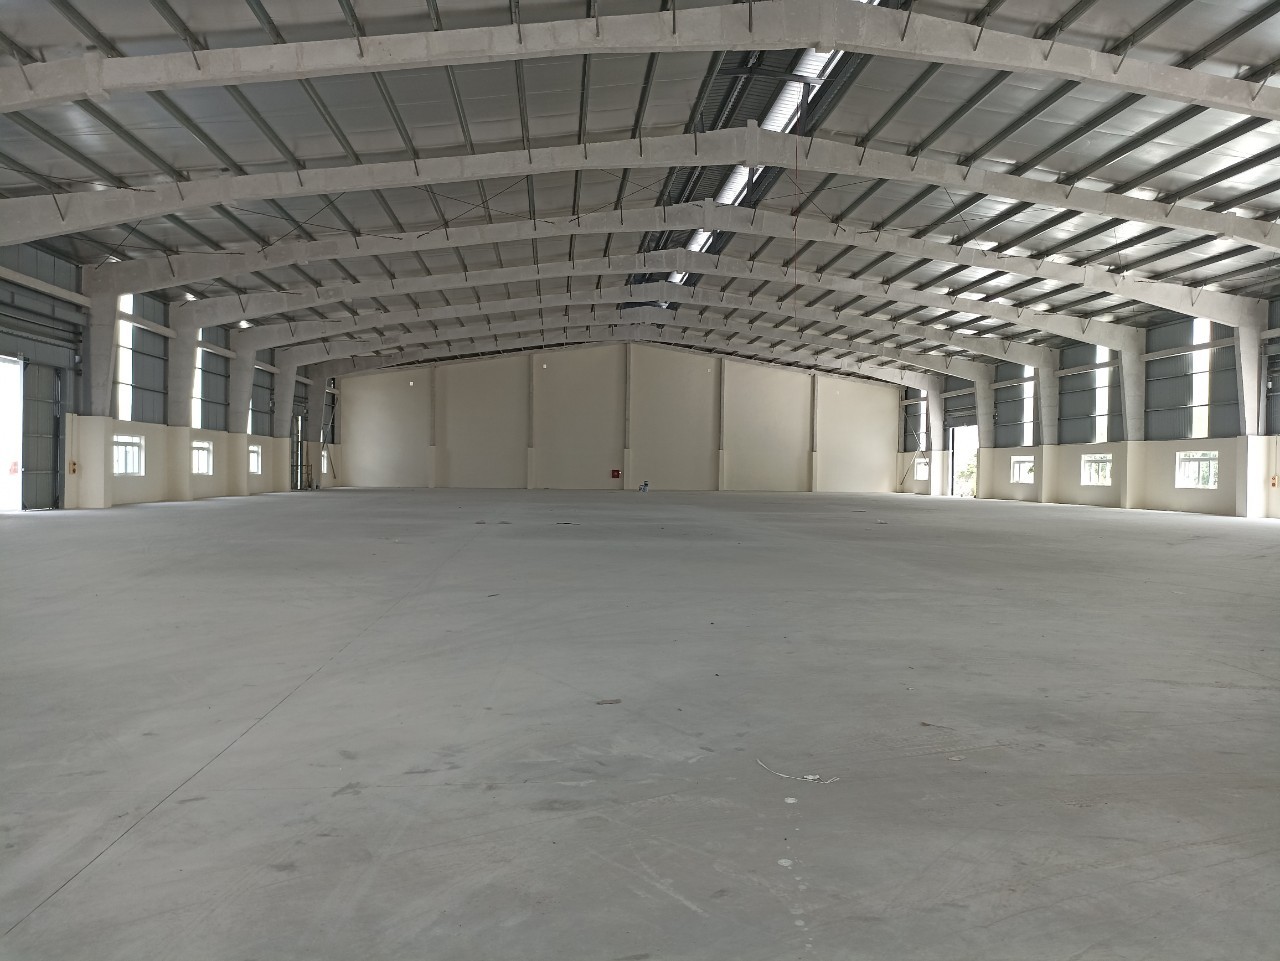 Cho thuê nhà xưởng mới trong và ngoài Khu CN Tân Hồng, Bắc Ninh, DT đa dạng 1000m2 đến 200.000m